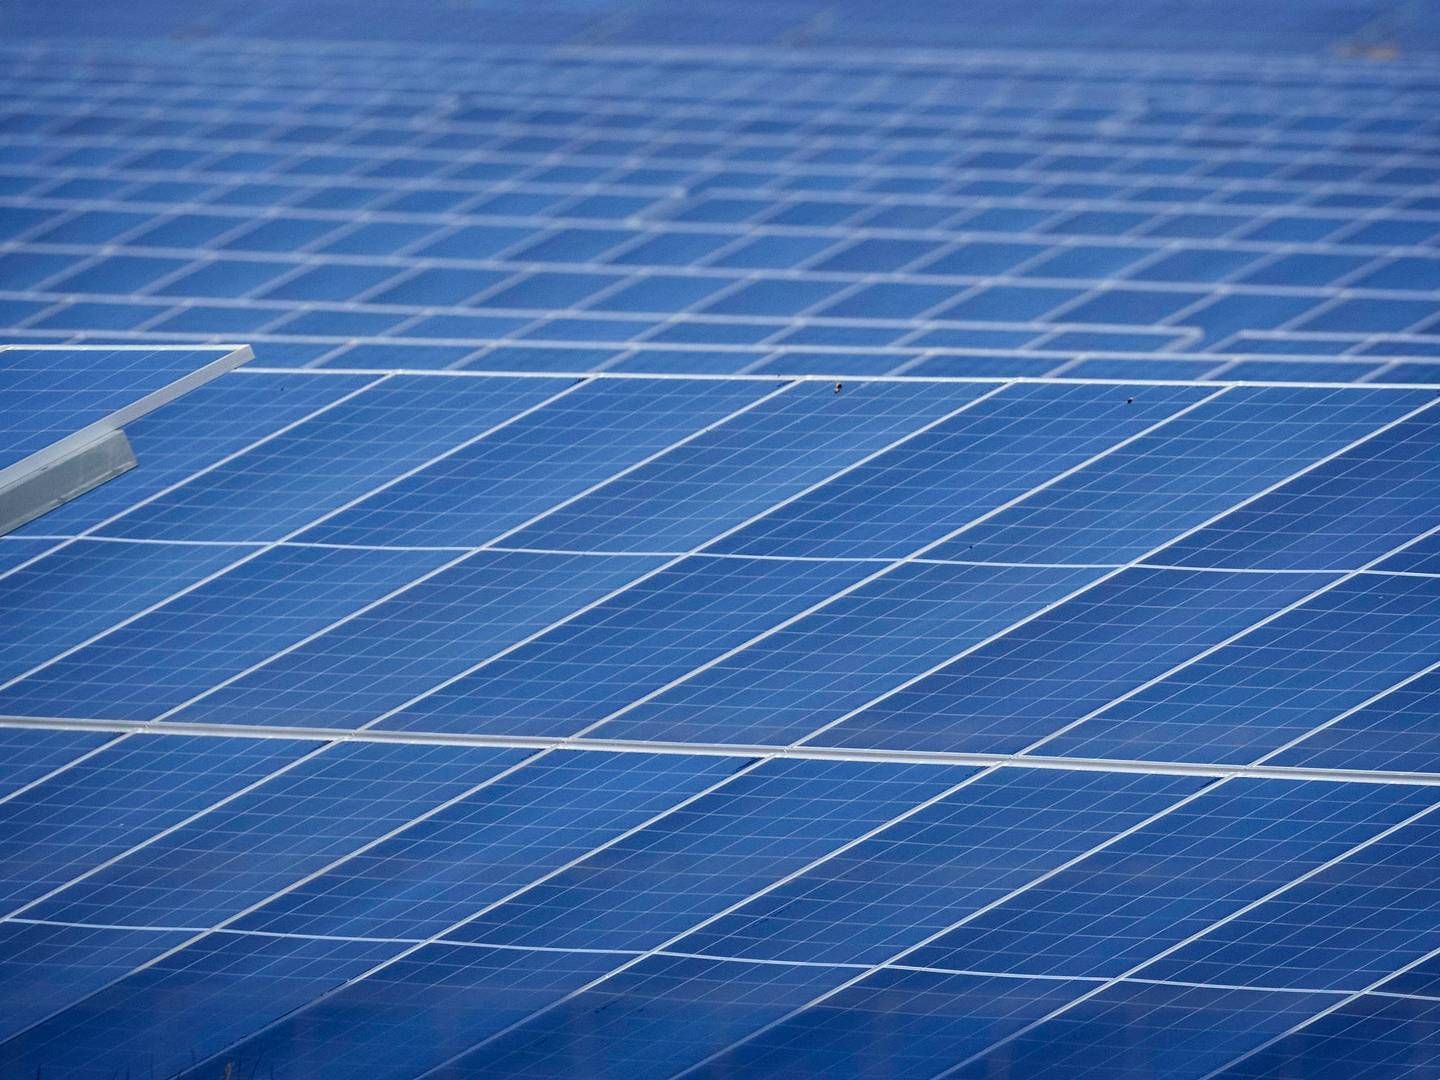 IRSK EIER: Det irske investeringsselskapet DCC går inn som ny eier for det norske solcelleselskapet Solcellekraft. | Foto: Jens Dresling